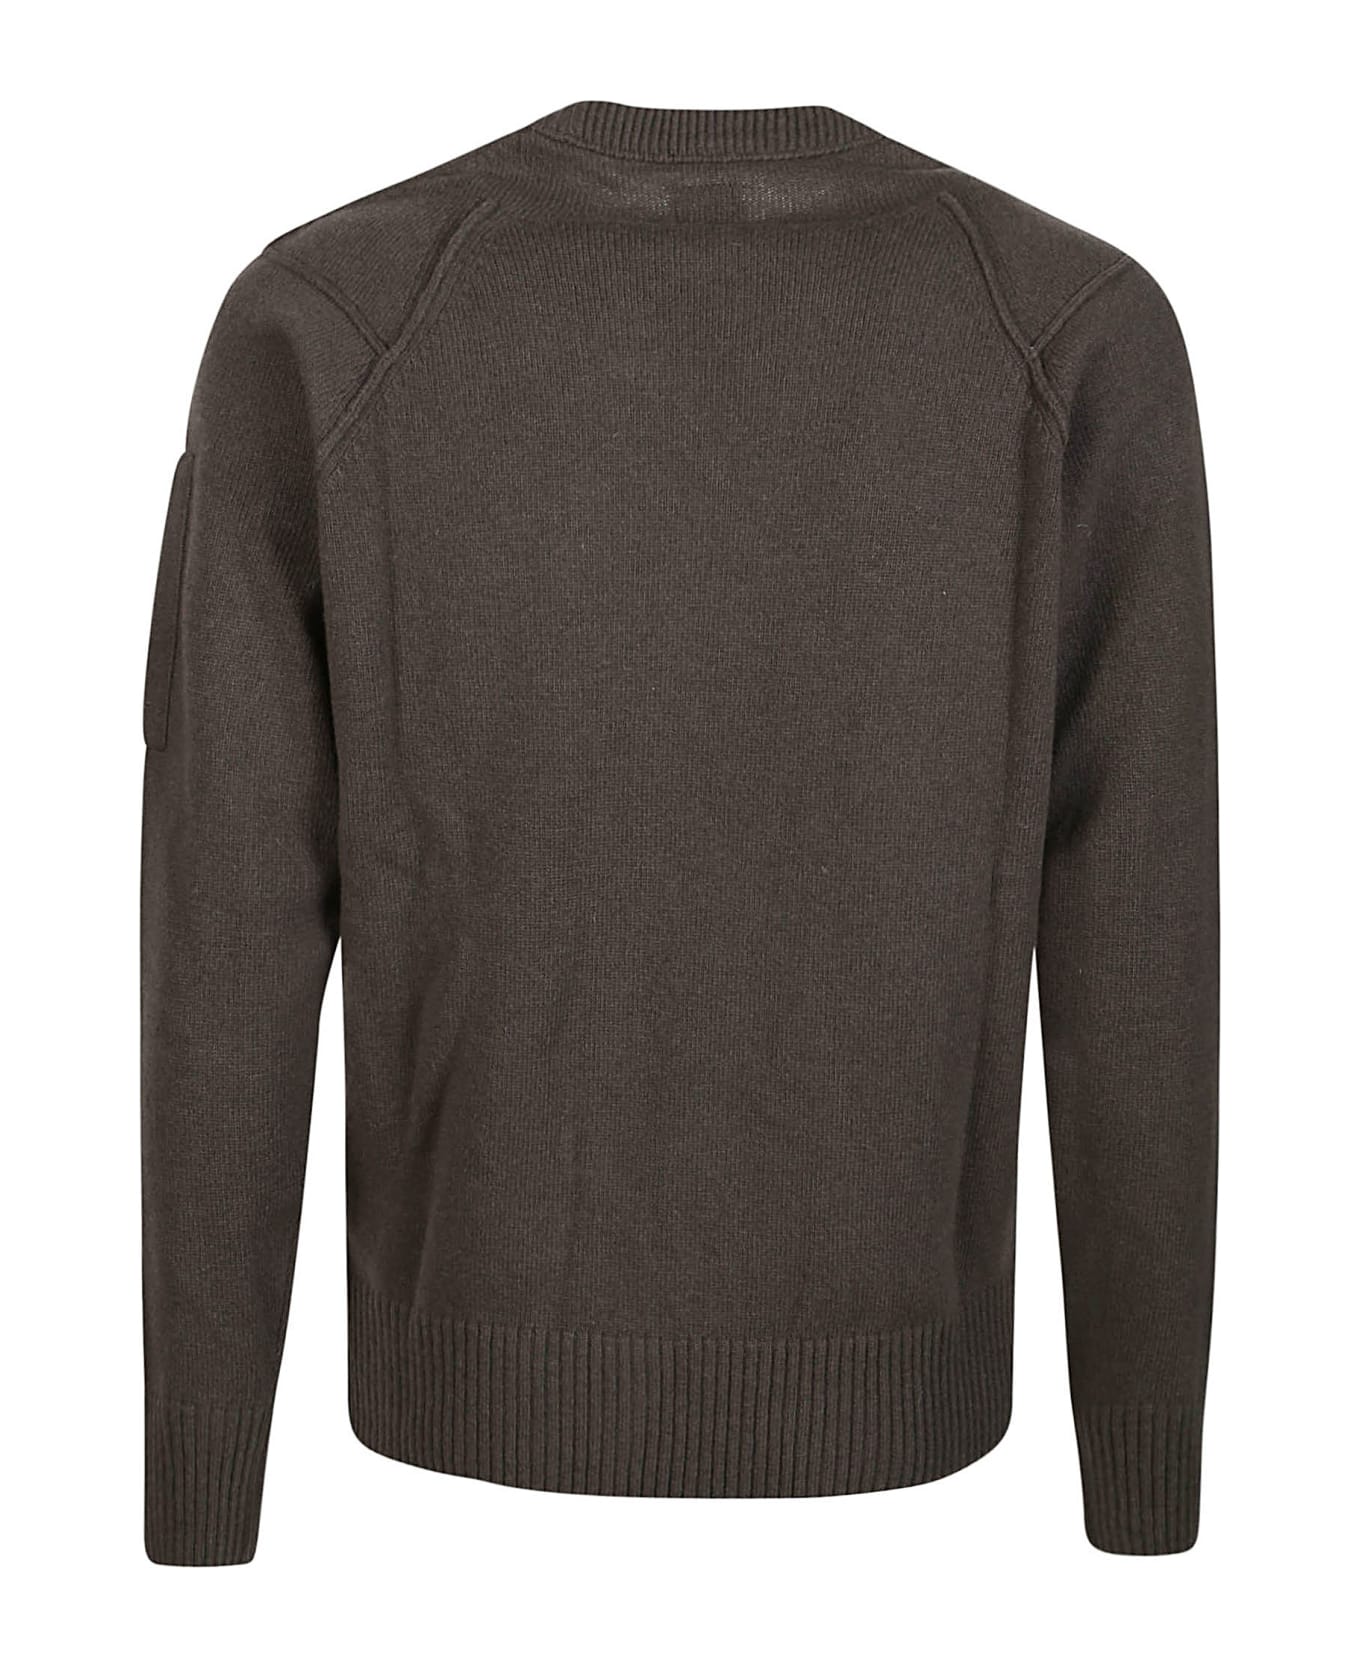 C.P. Company Sweater - Green ニットウェア